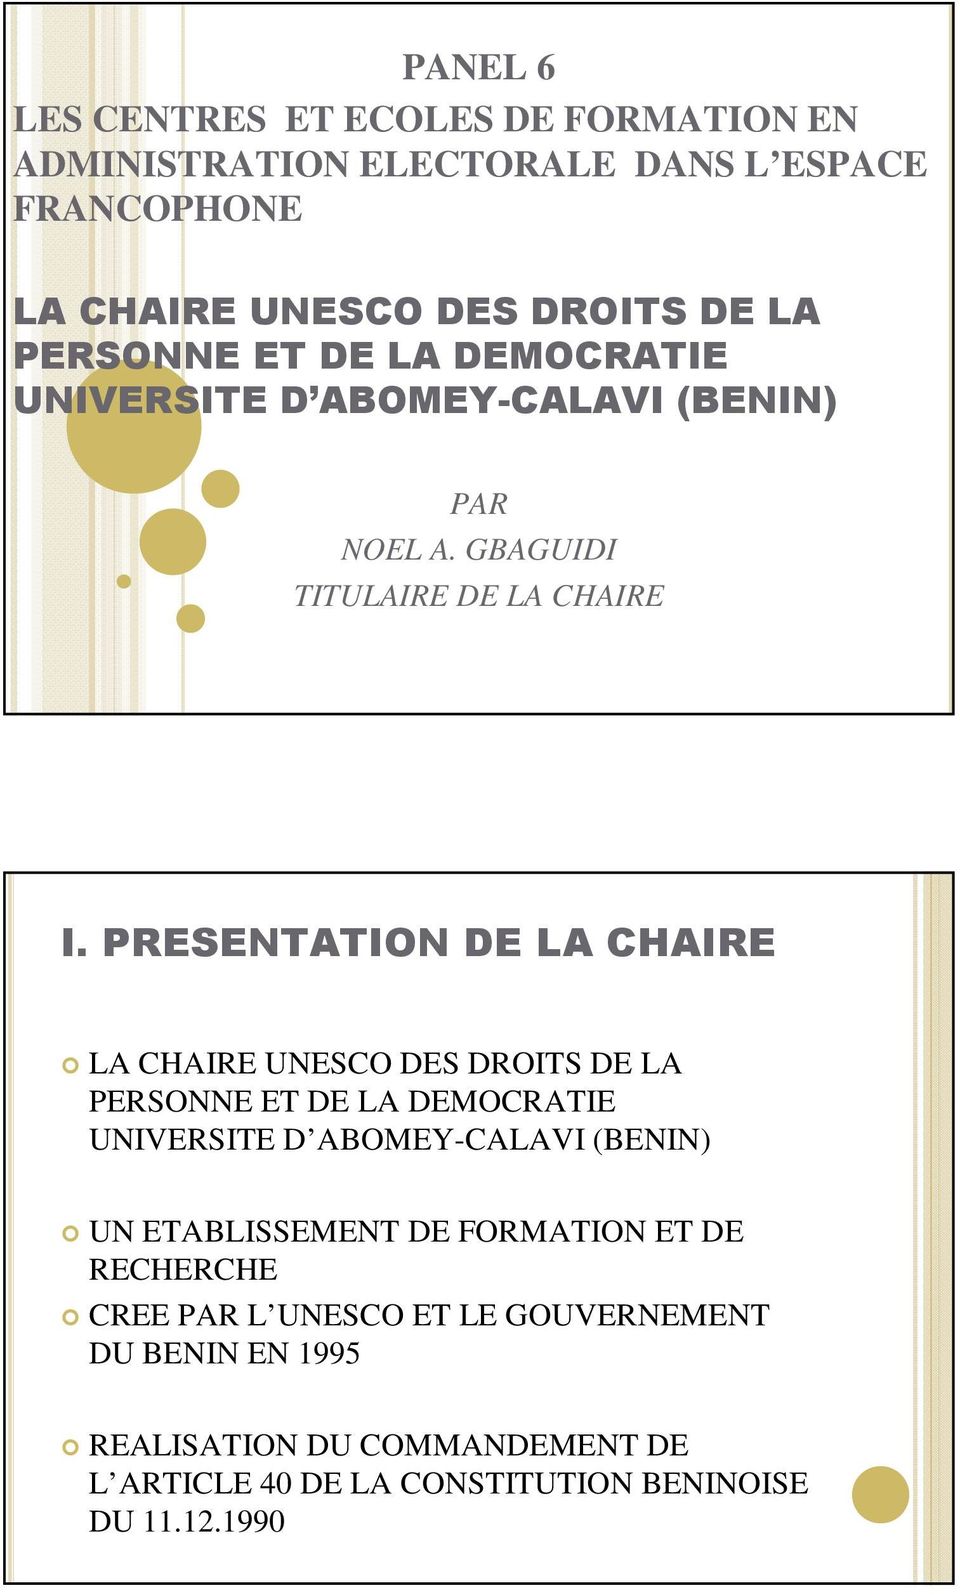 PRESENTATION DE LA CHAIRE LA CHAIRE UNESCO DES DROITS DE LA PERSONNE ET DE LA DEMOCRATIE UNIVERSITE D ABOMEY-CALAVI (BENIN) UN